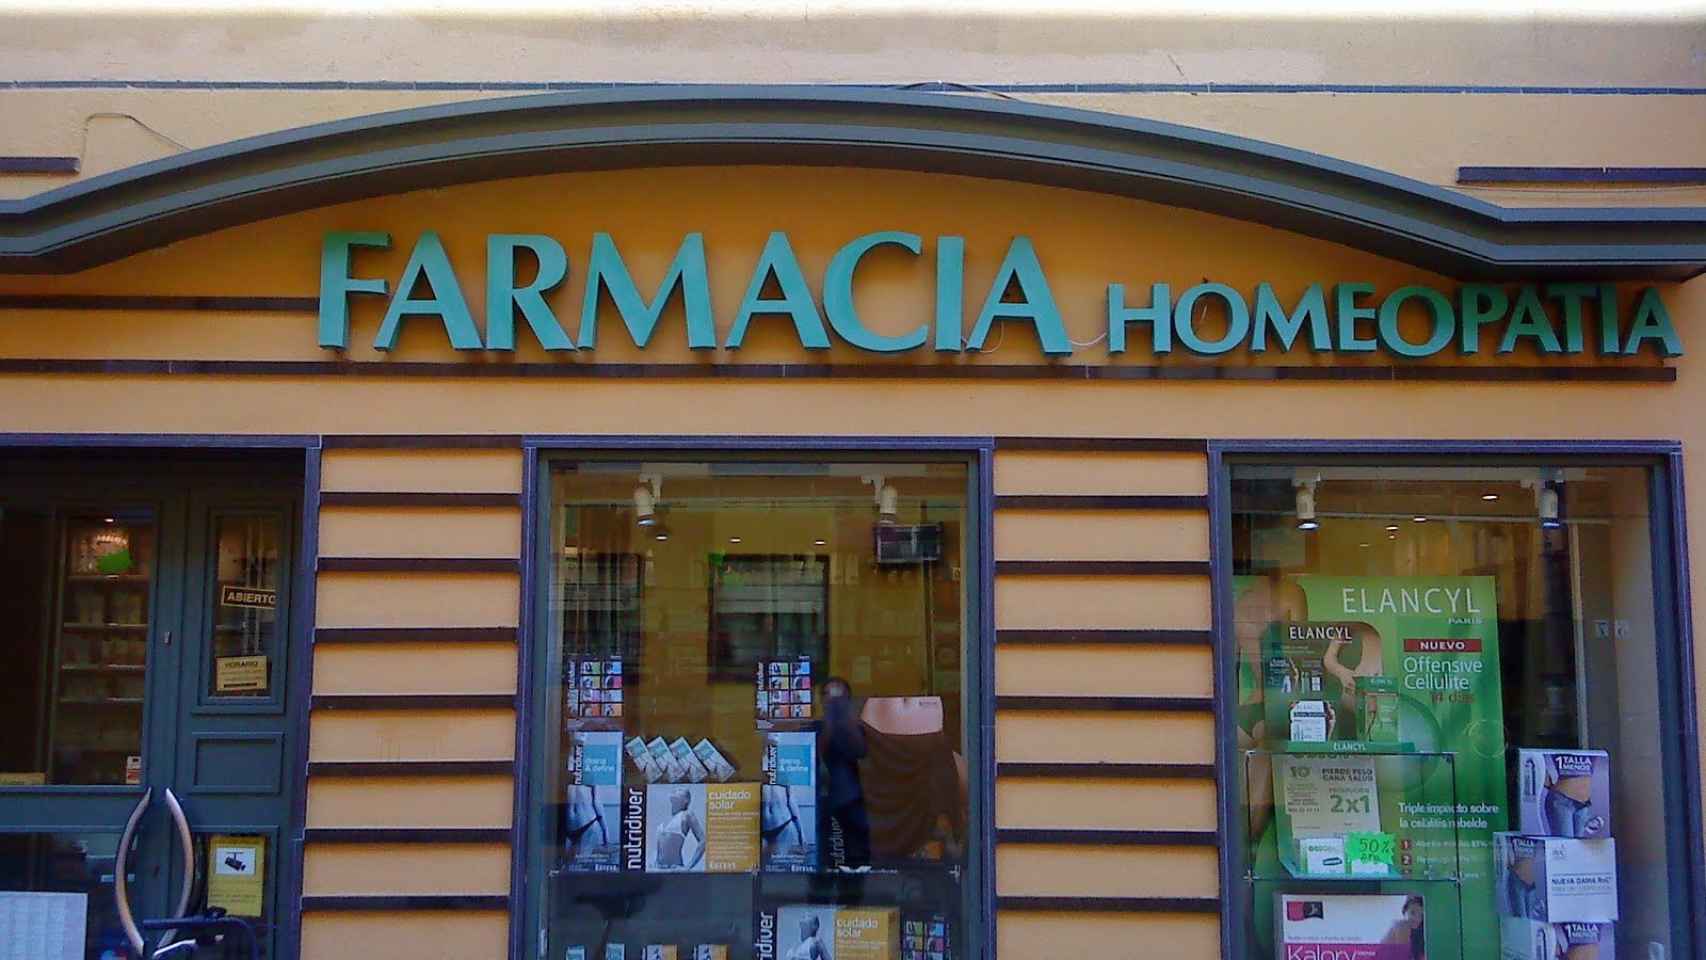 Una oficina de farmacia que anuncia las especialidades homeopáticas